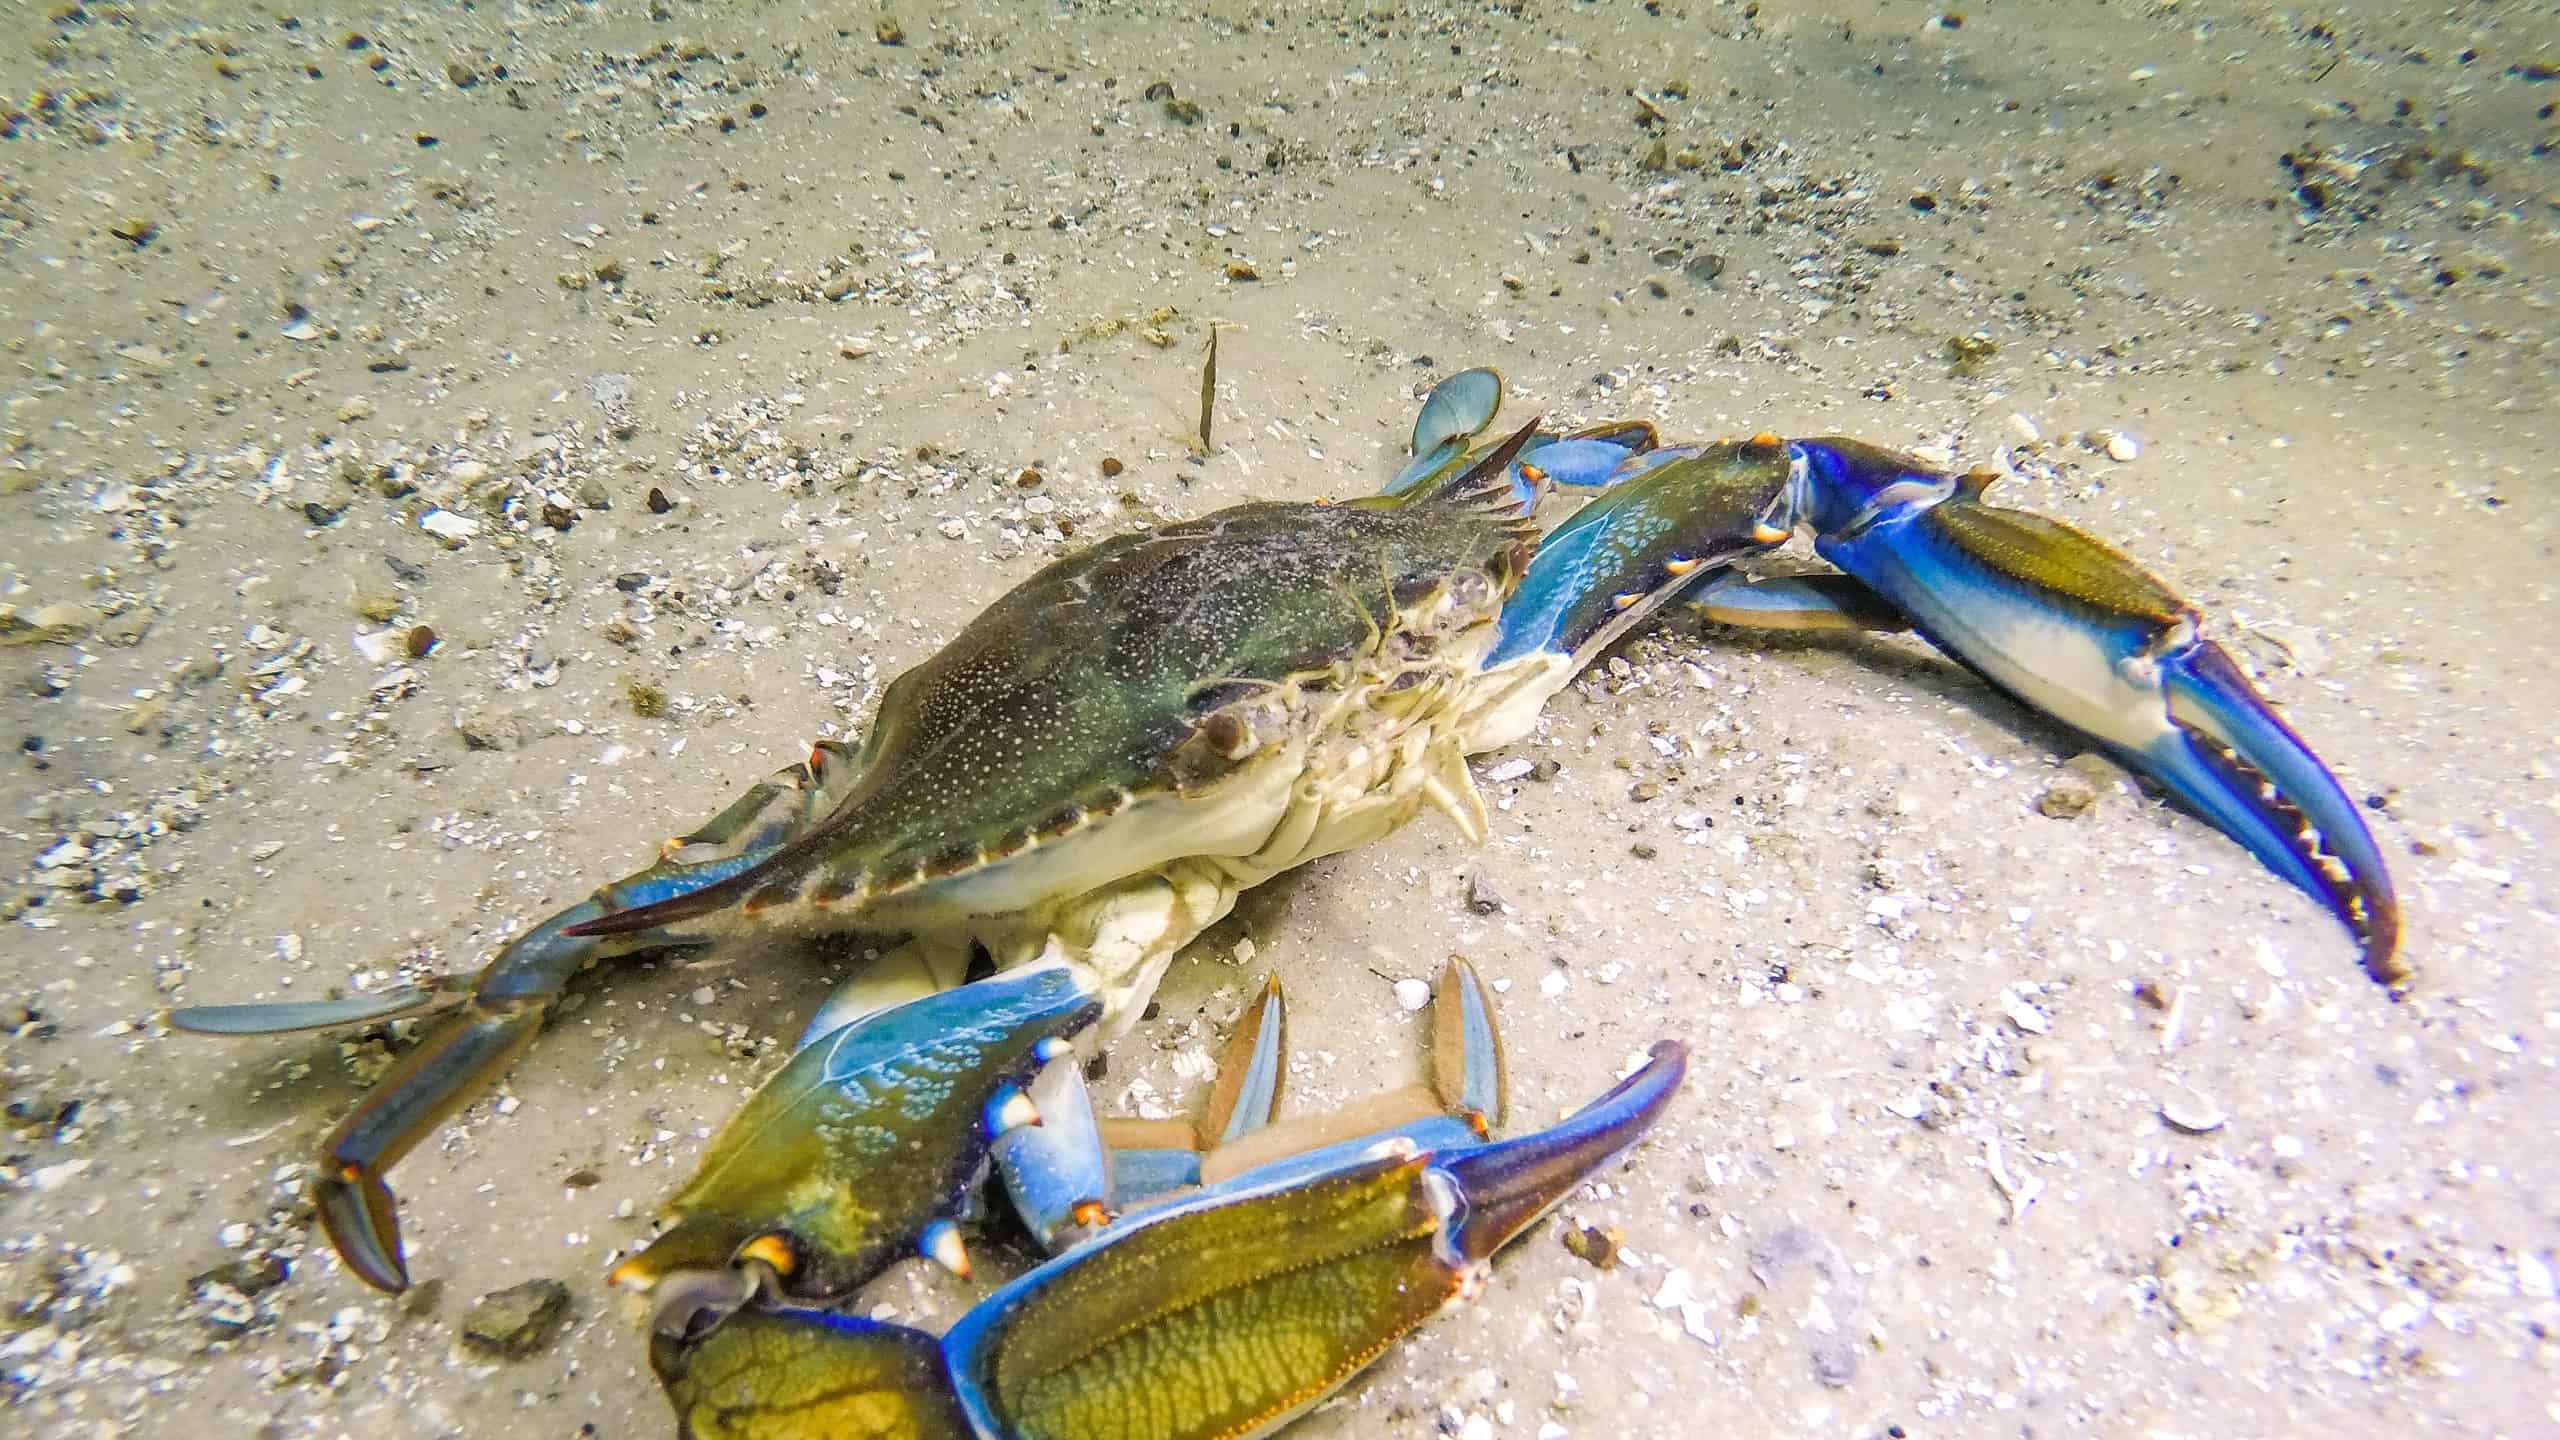 Blue crab under water walking on sandy bottom